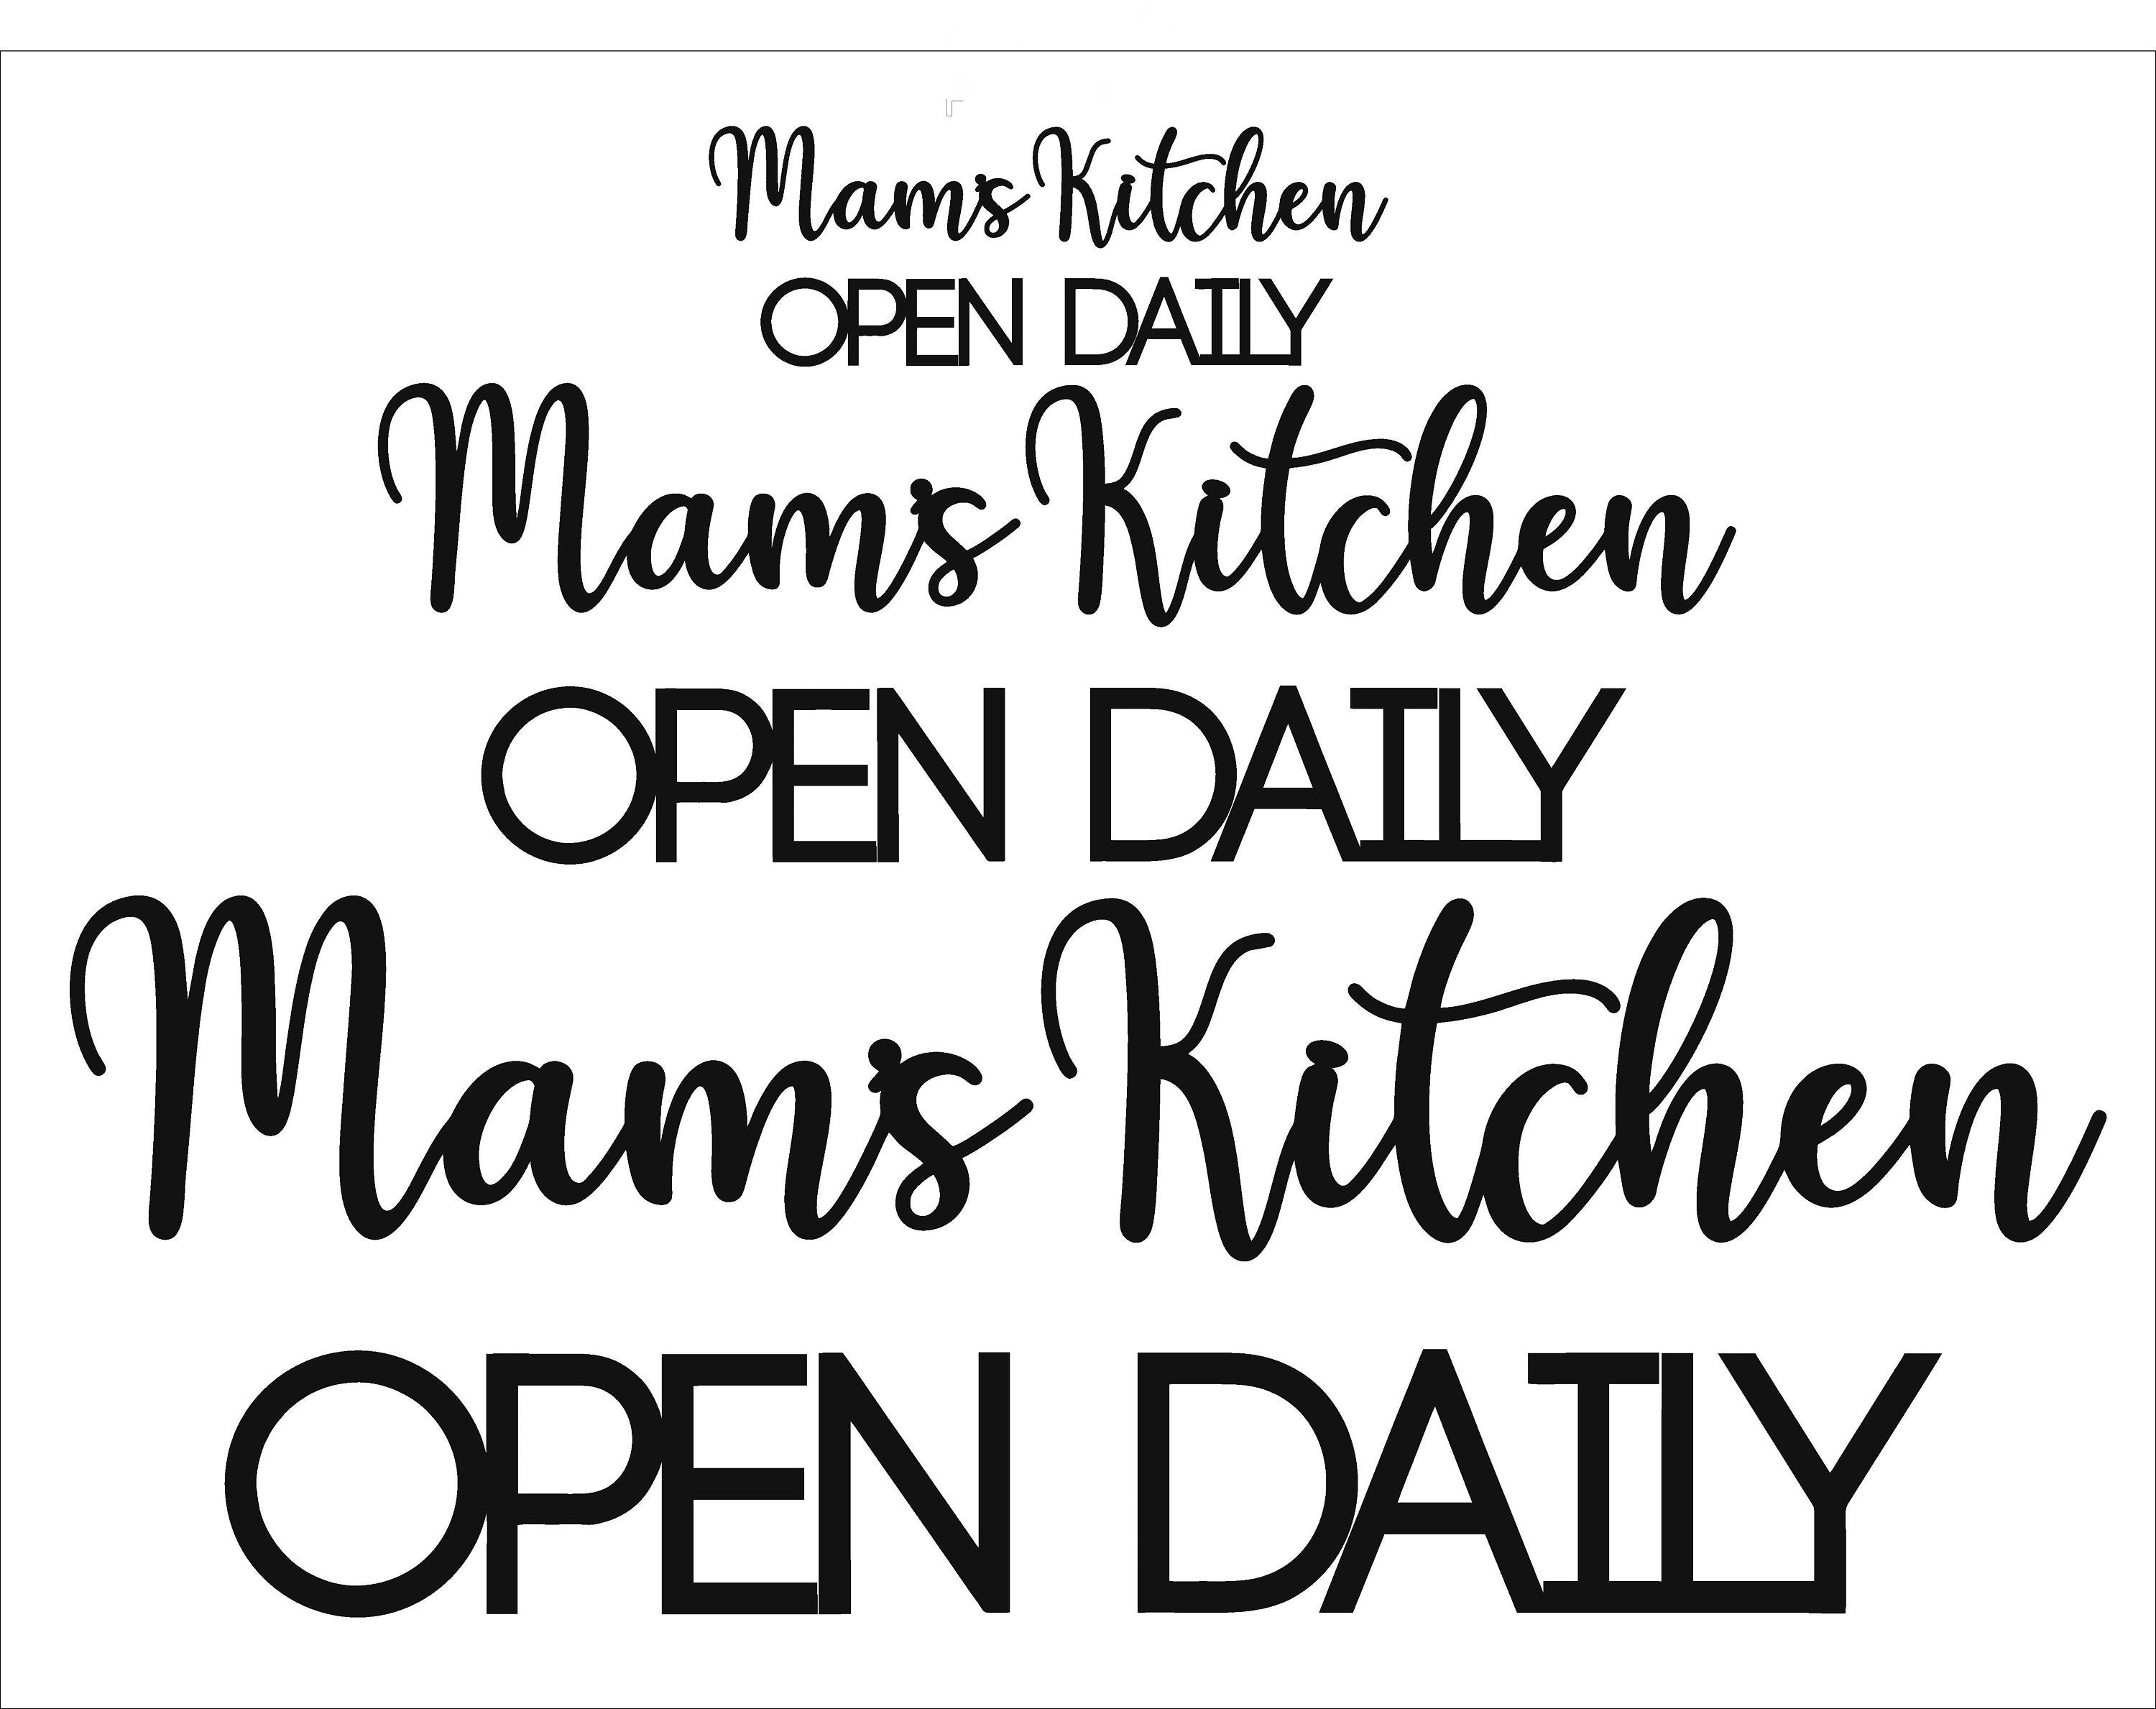 Mam's Kitchen Open Daily Art - Wooden Word Text Art - Kitchen Art Gift